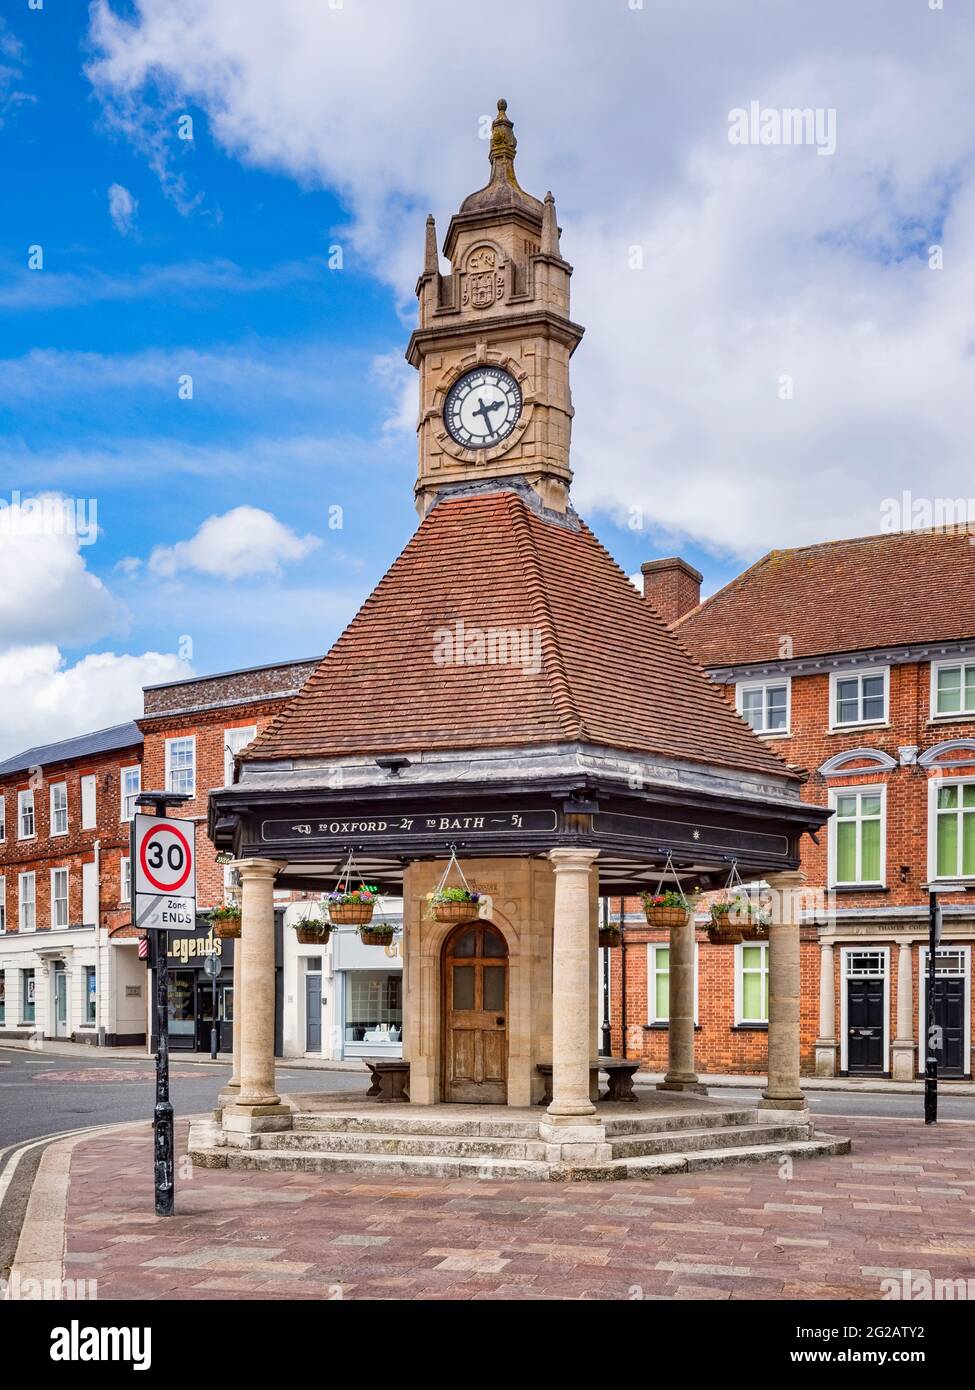 8 de junio de 2019: en Newbury, Berkshire, Reino Unido - La Casa del Reloj, una torre del reloj del siglo xx en Newbury, Berkshire. Foto de stock